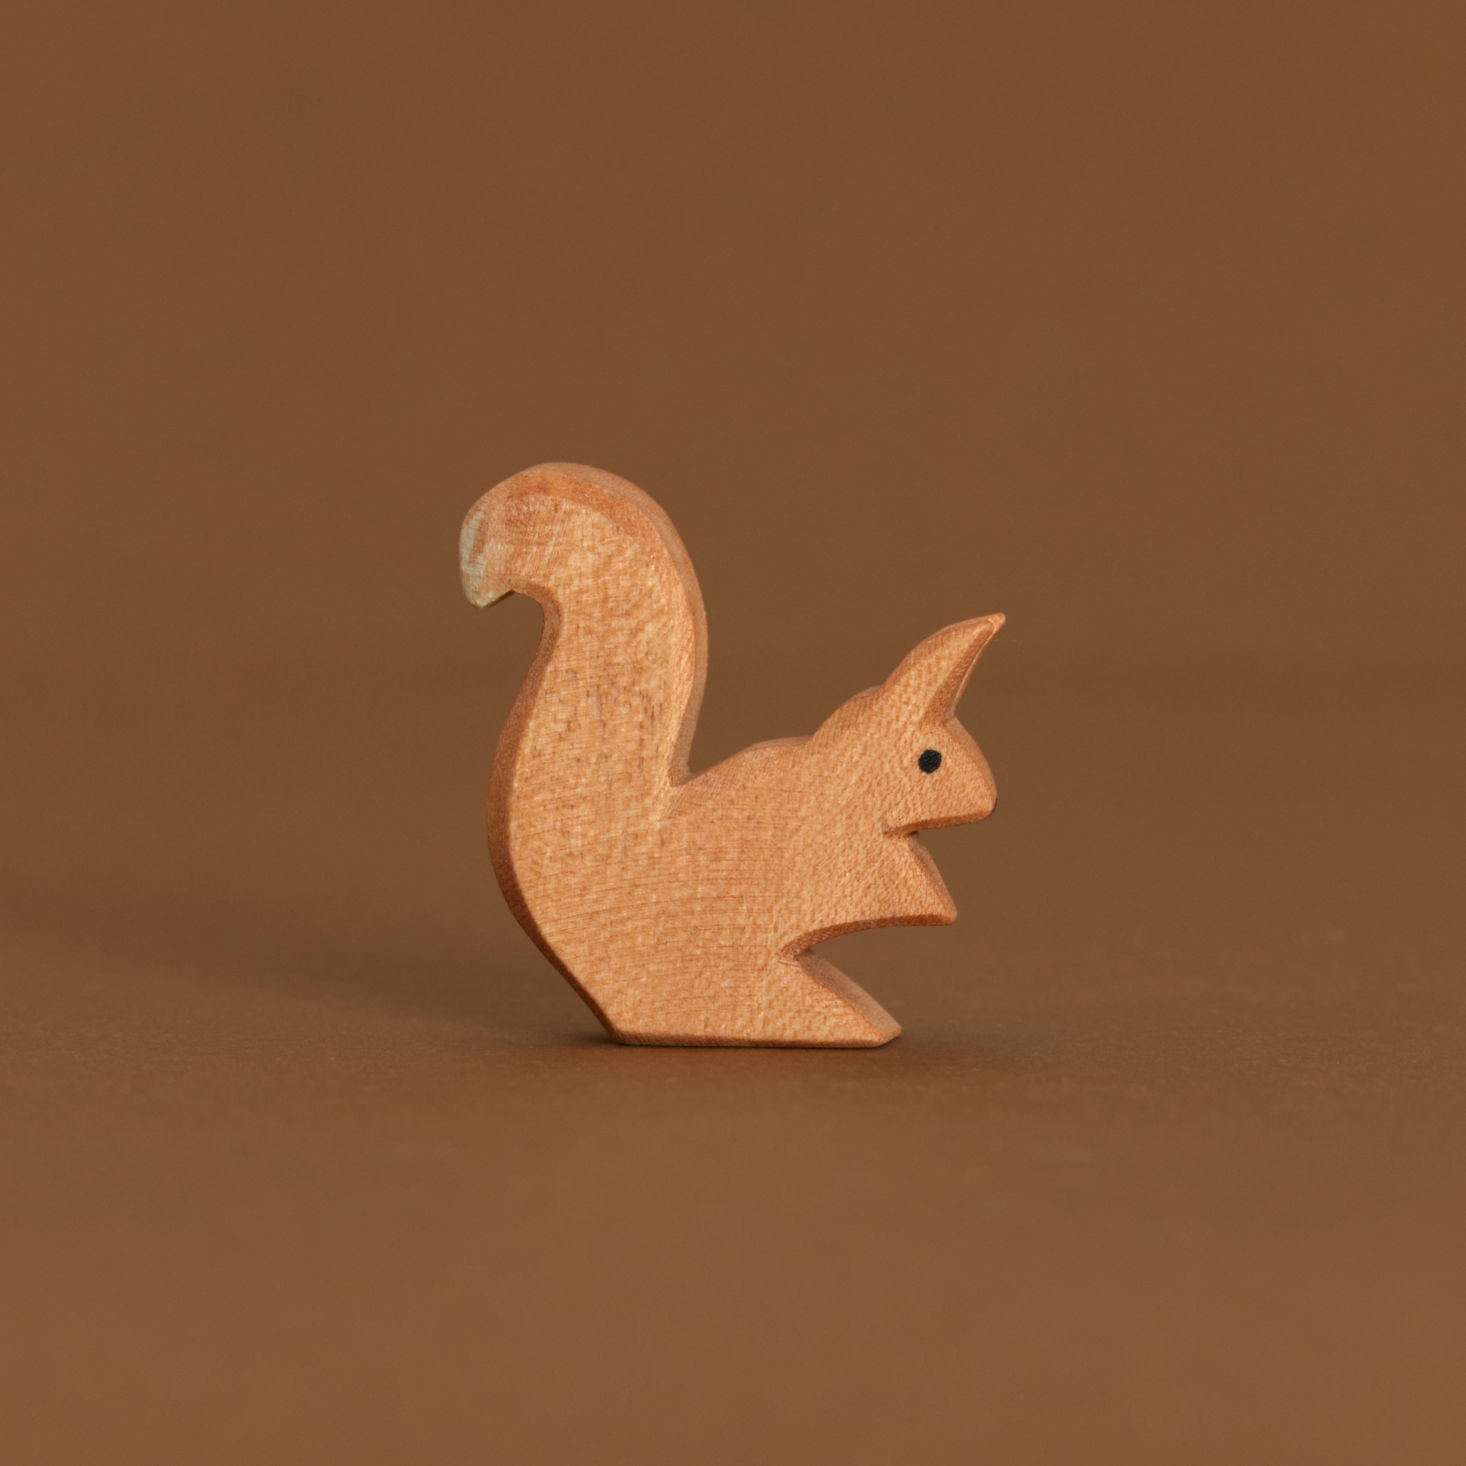 Ein braunes, sitzendes Eichhörnchen aus Naturholz gefertigt von Ostheimer, ist im Profil fotografiert. Es ist leicht nach vorne gebeugt, genauso das Ohr. Der Schwanz mit weißer Spitze zeigt jedoch nach oben.